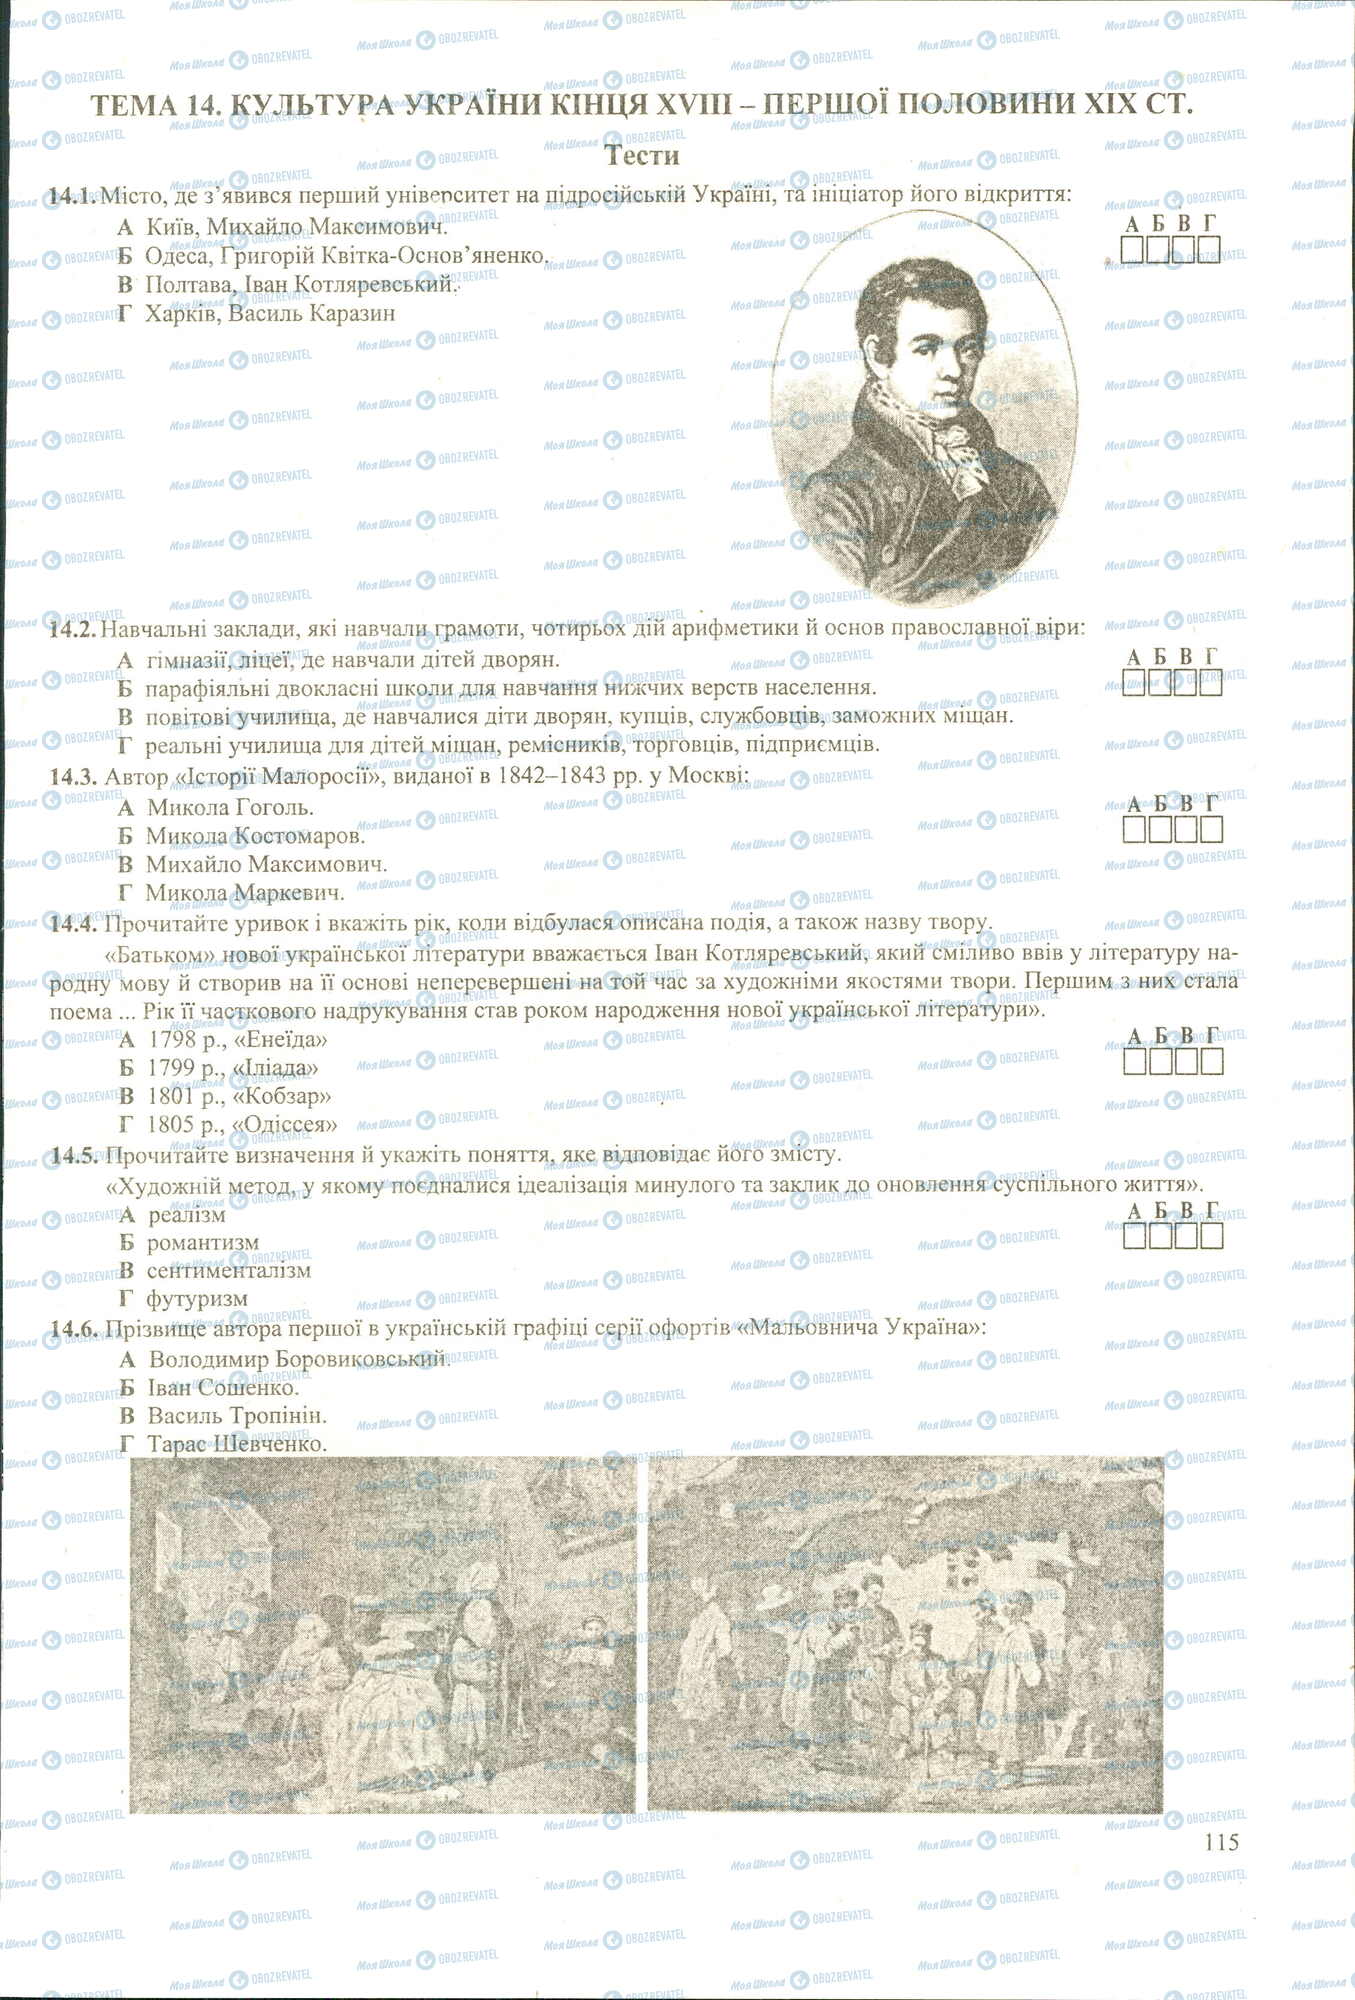 ЗНО История Украины 11 класс страница 1-6